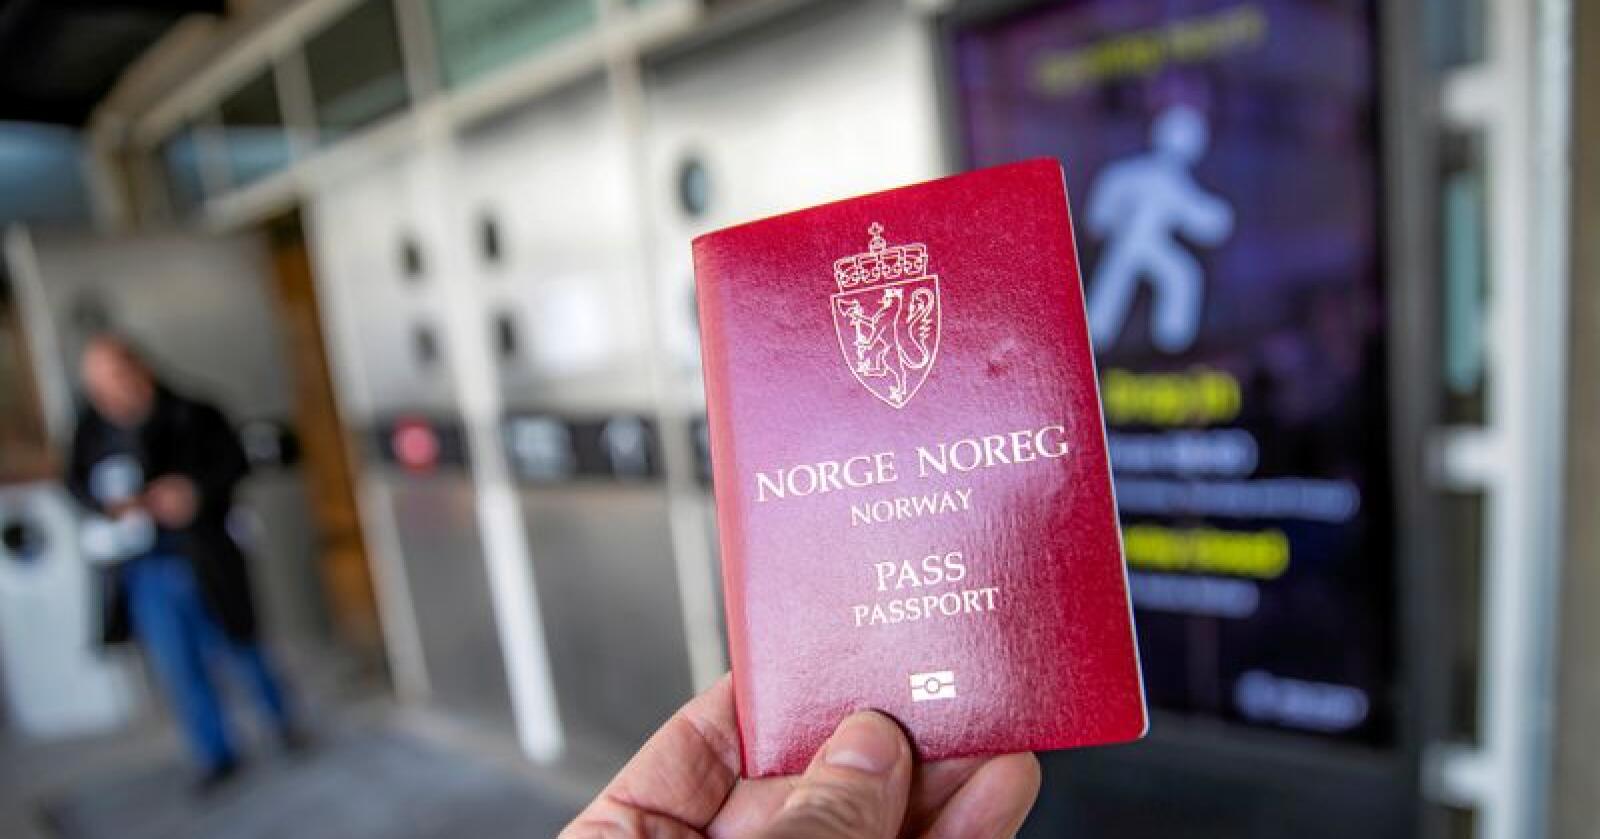 45 minutters reisetid til et passkontor er ikke lengre et avgjørende kriterium for regjeringen. Foto: Håkon Mosvold Larsen / NTB scanpix